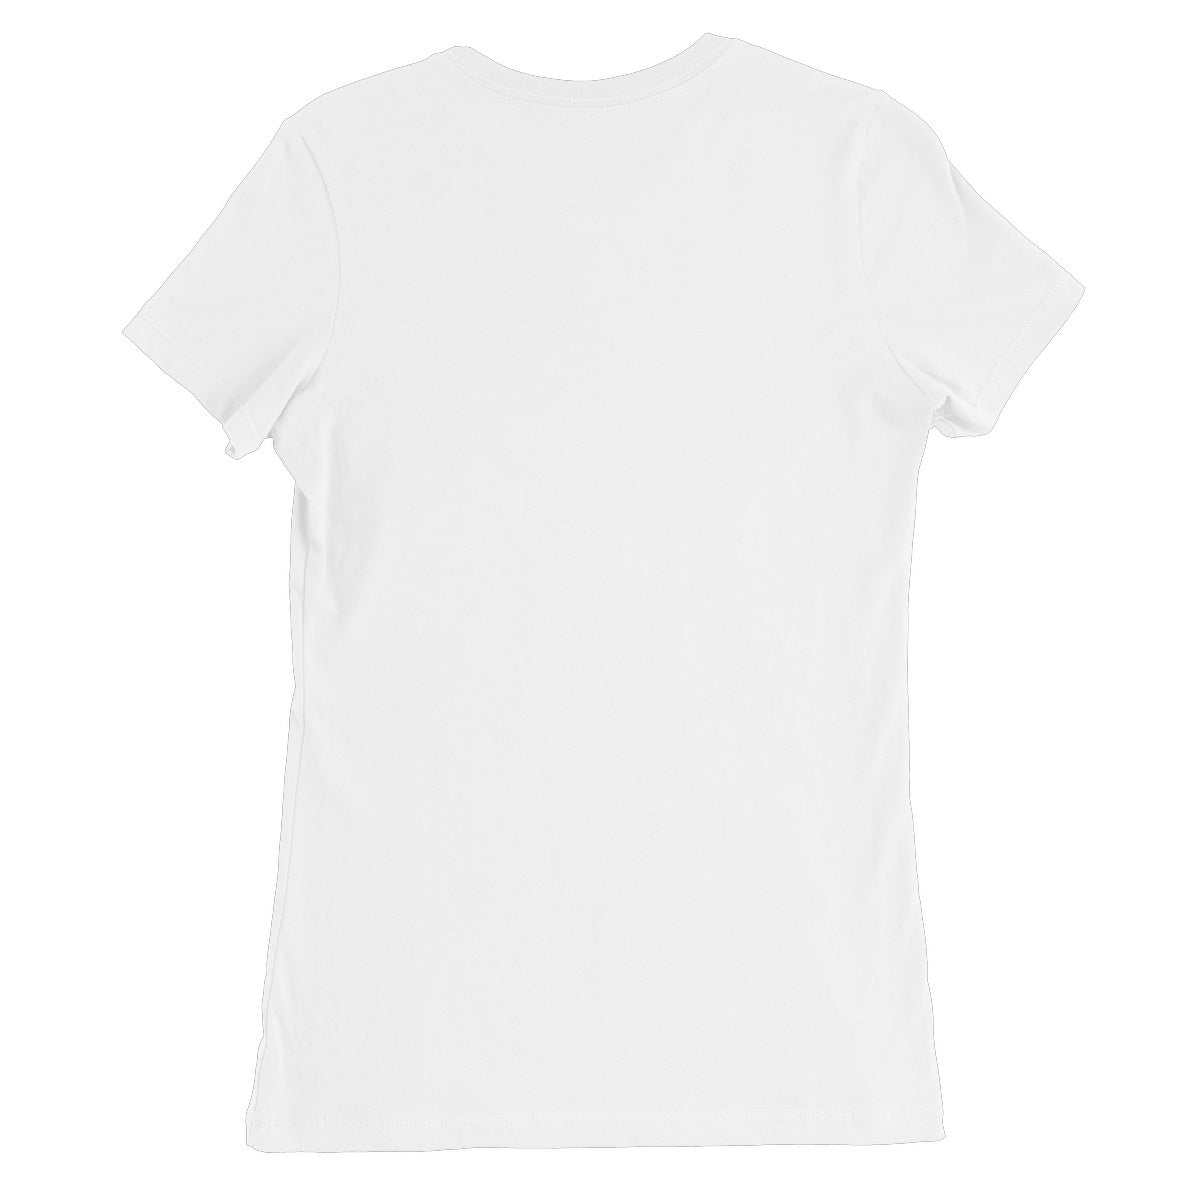 Five Cubes, Summer Women's Favourite T-Shirt